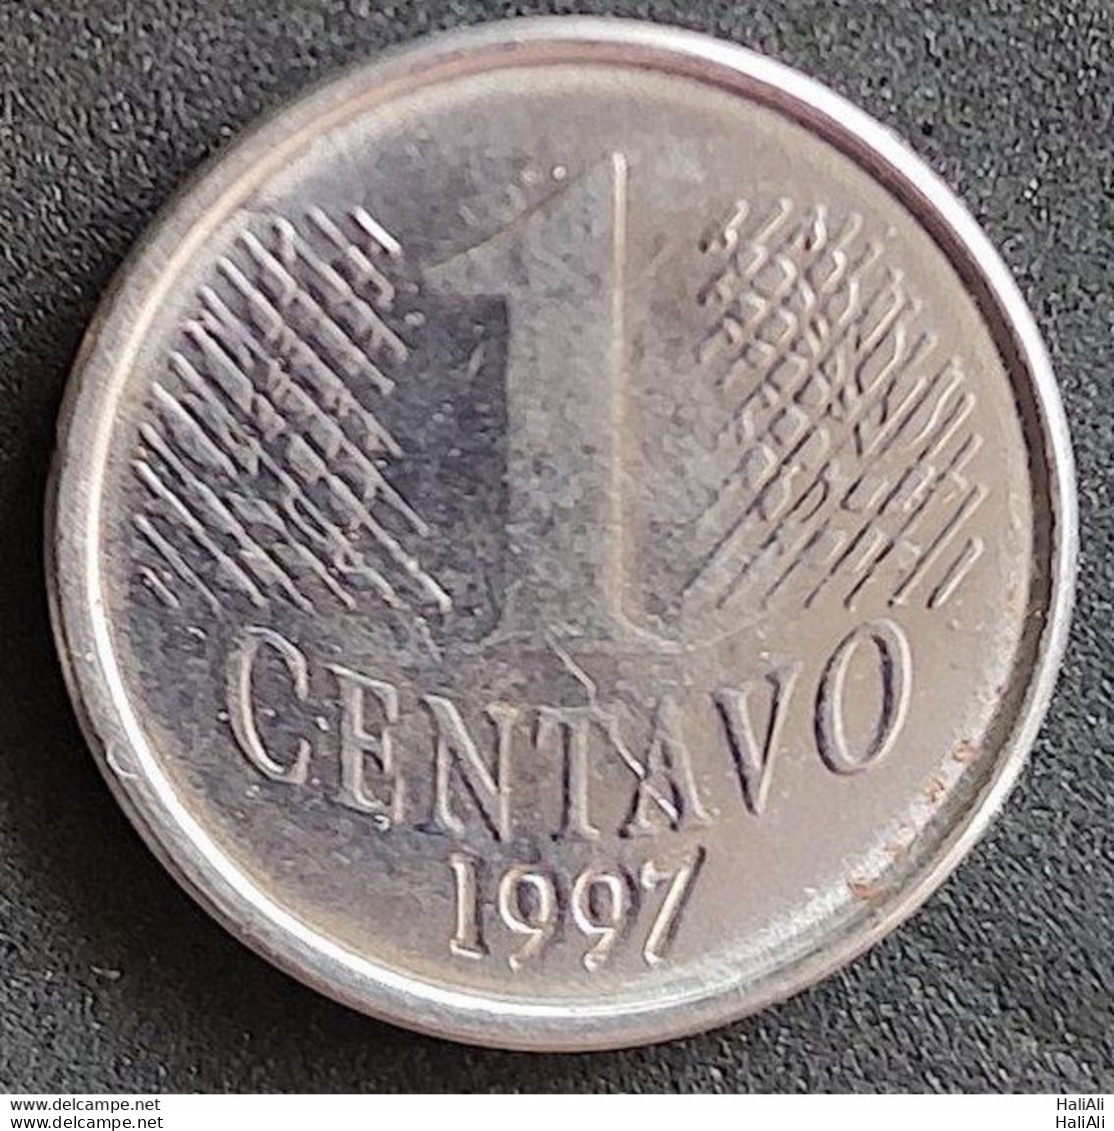 Coin Brazil Moeda Brasil 1997 1 Centavo 1 - Brazil